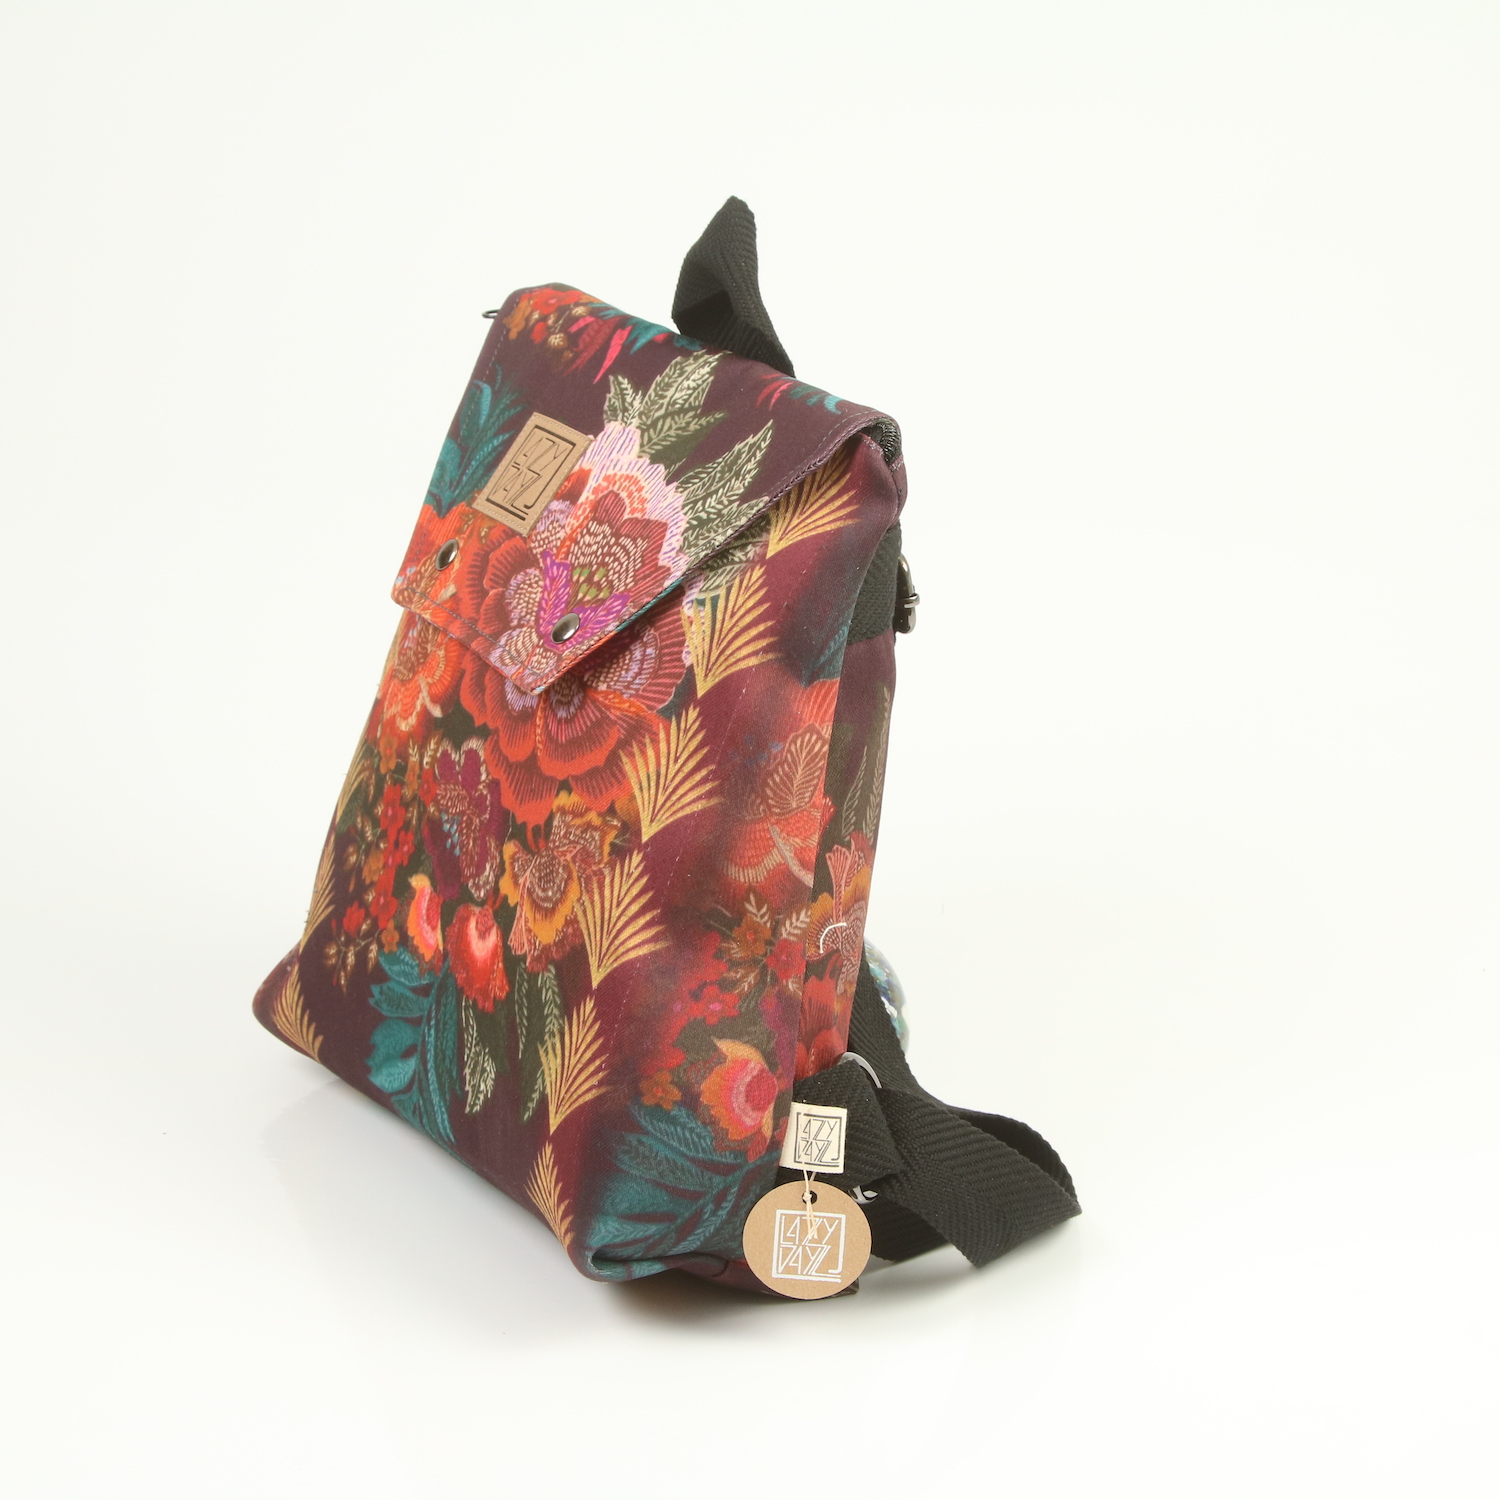 LazyDayz-Designs-Backpack-γυναικείος-σάκος-πλάτης-χειροποίητος bb0303b